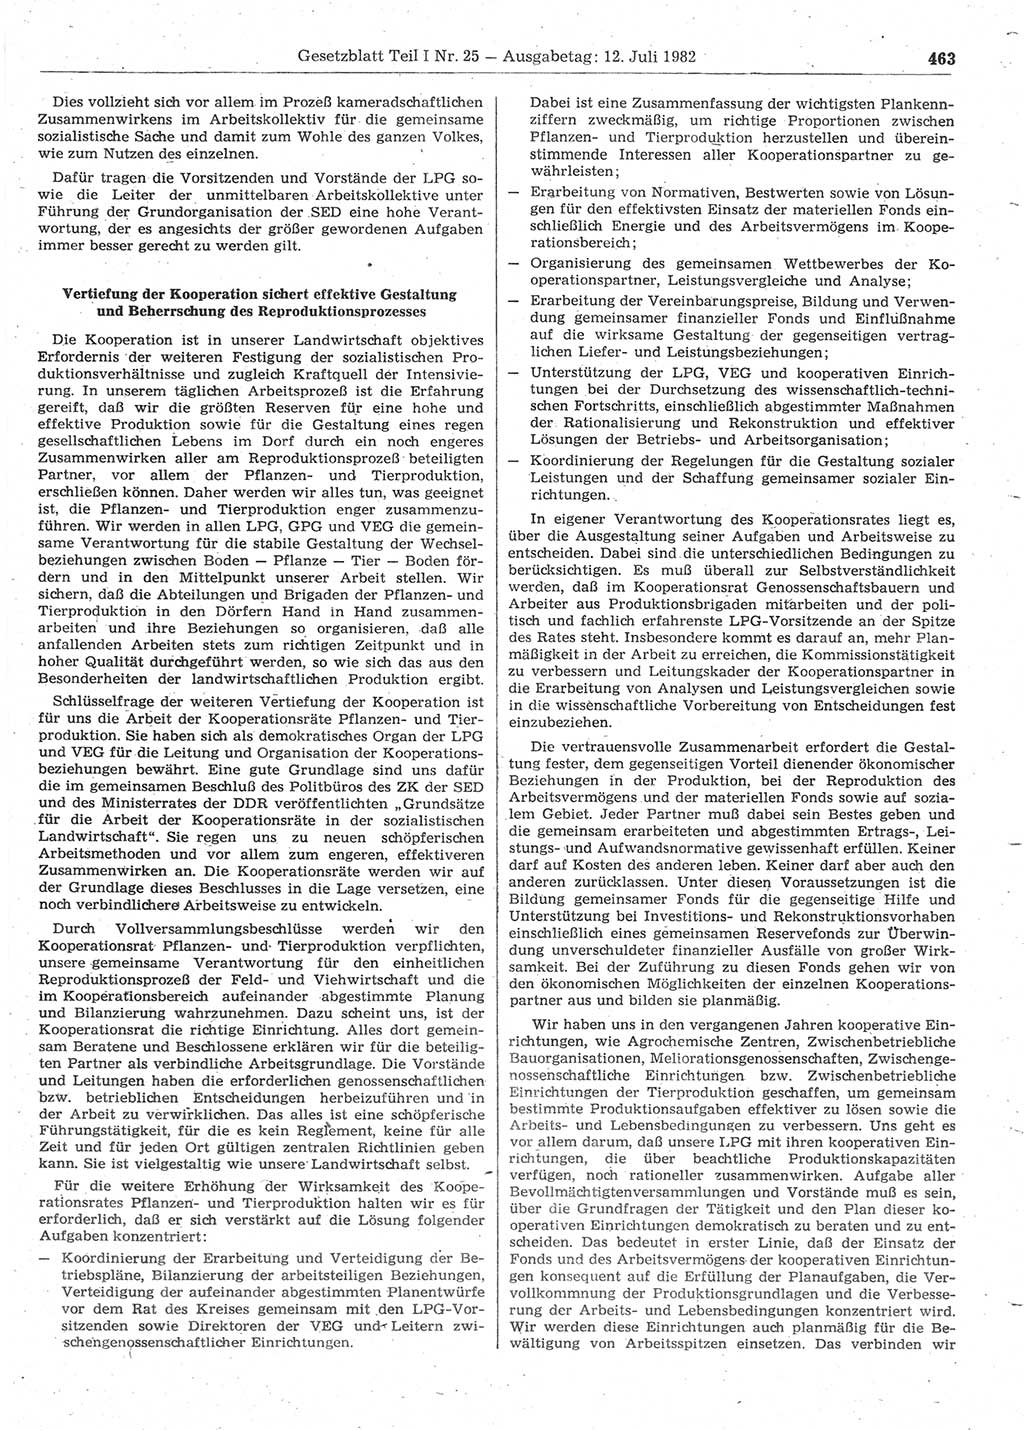 Gesetzblatt (GBl.) der Deutschen Demokratischen Republik (DDR) Teil Ⅰ 1982, Seite 463 (GBl. DDR Ⅰ 1982, S. 463)